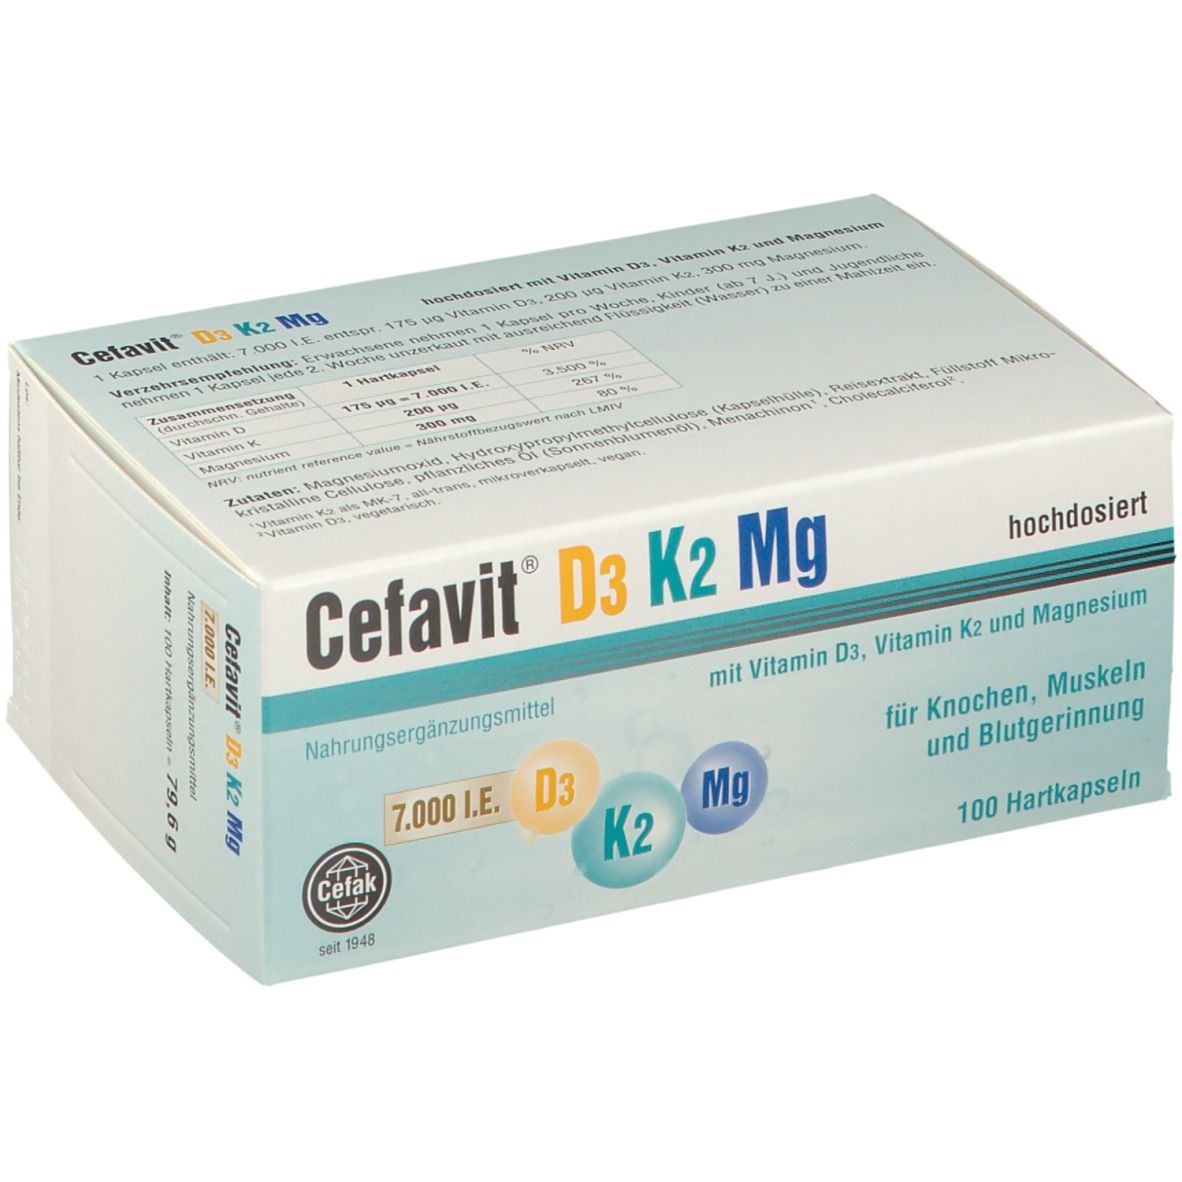 Cefavit® D3 K2 Mg 7.000